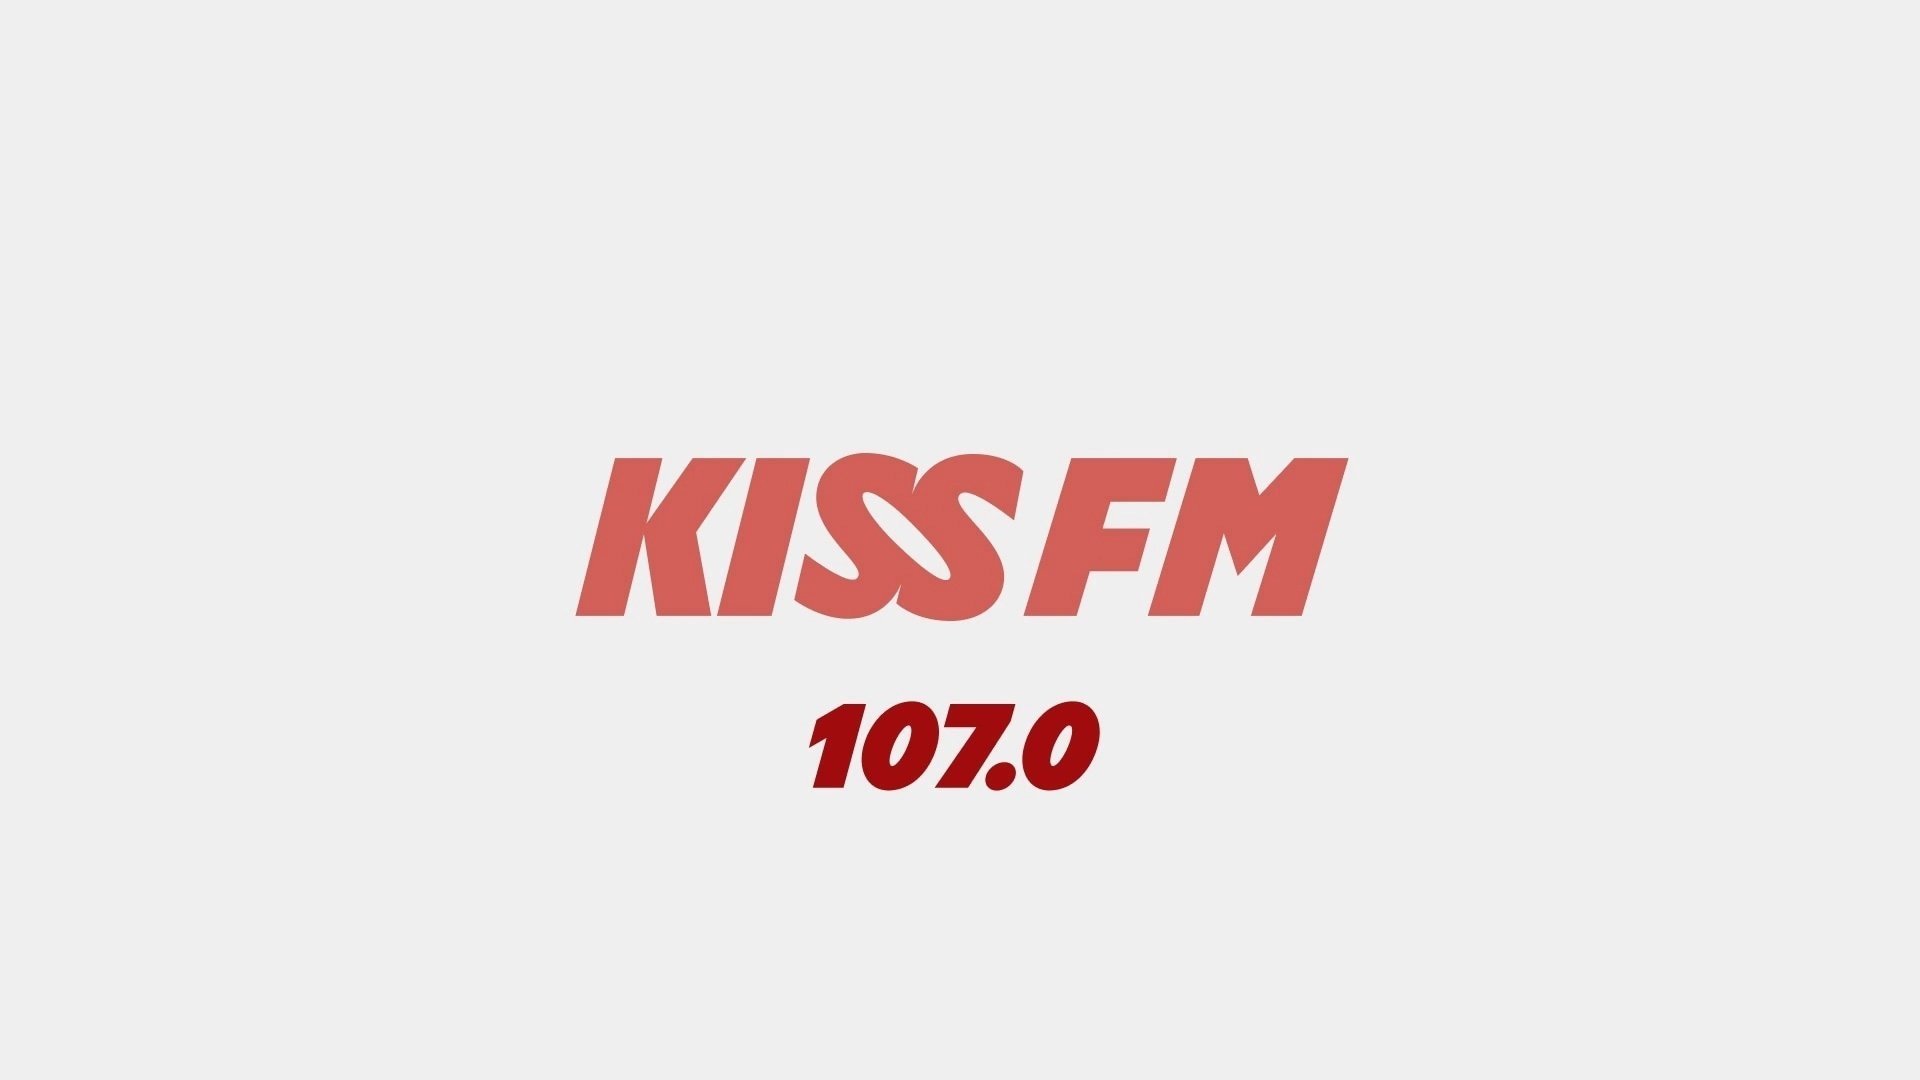 В Москве на частоте 107.0 FM заработает новое музыкальное радио KISS FM